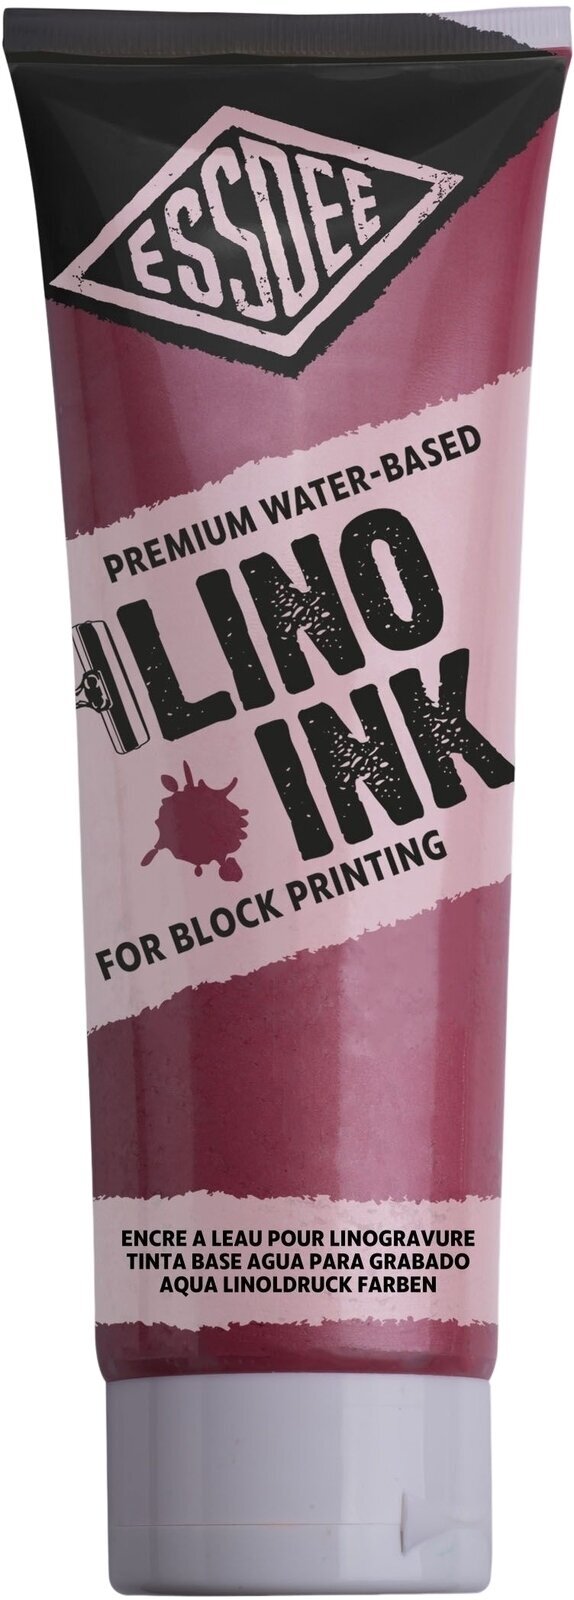 Verf voor linosnede Essdee Block Printing Ink Verf voor linosnede Pearlescent Red 300 ml